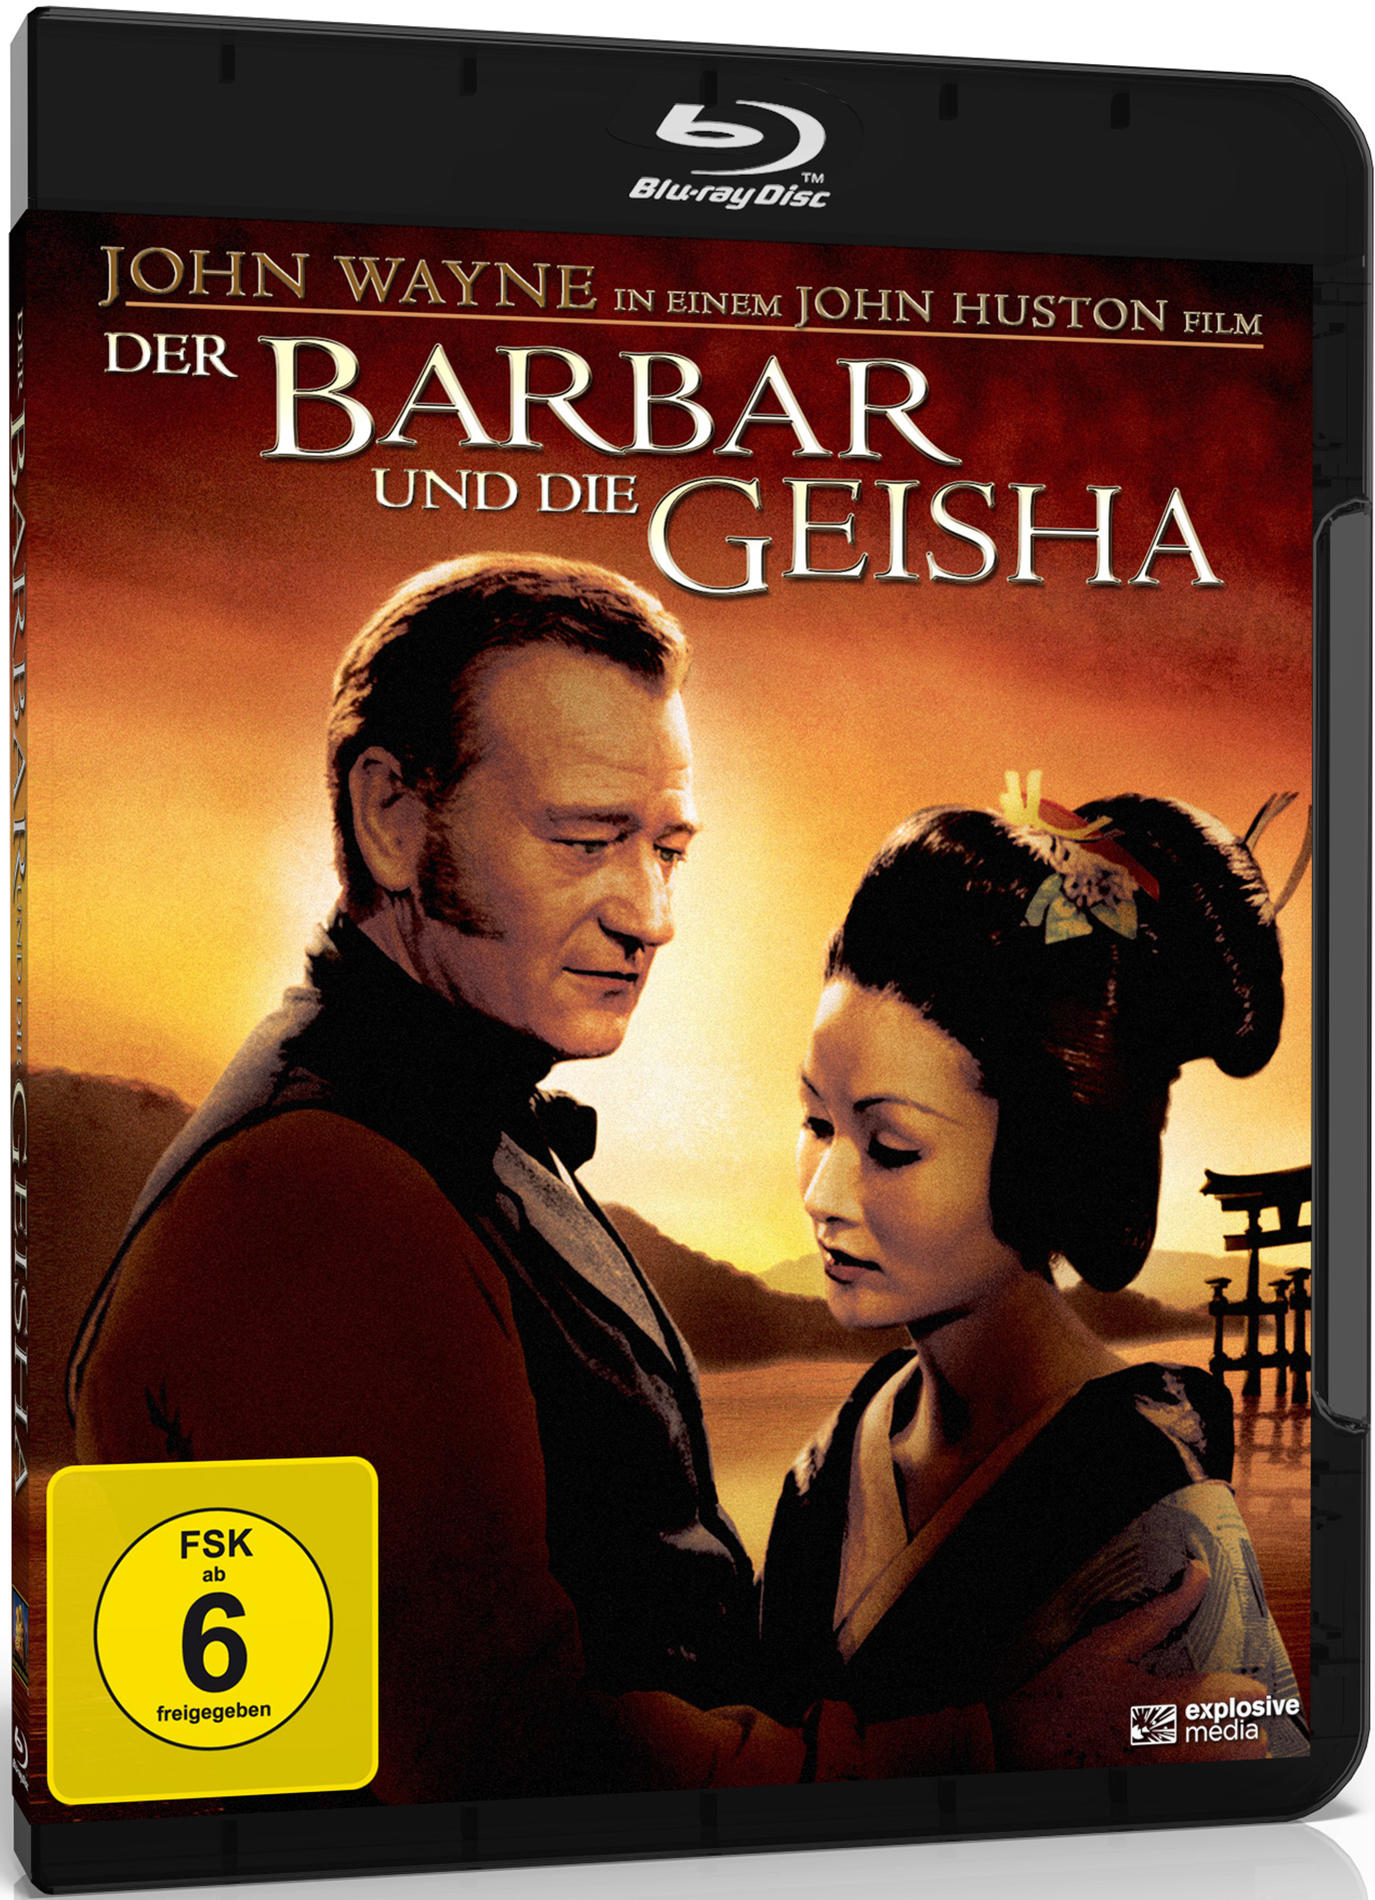 Der Barbar Blu-ray und Geisha die